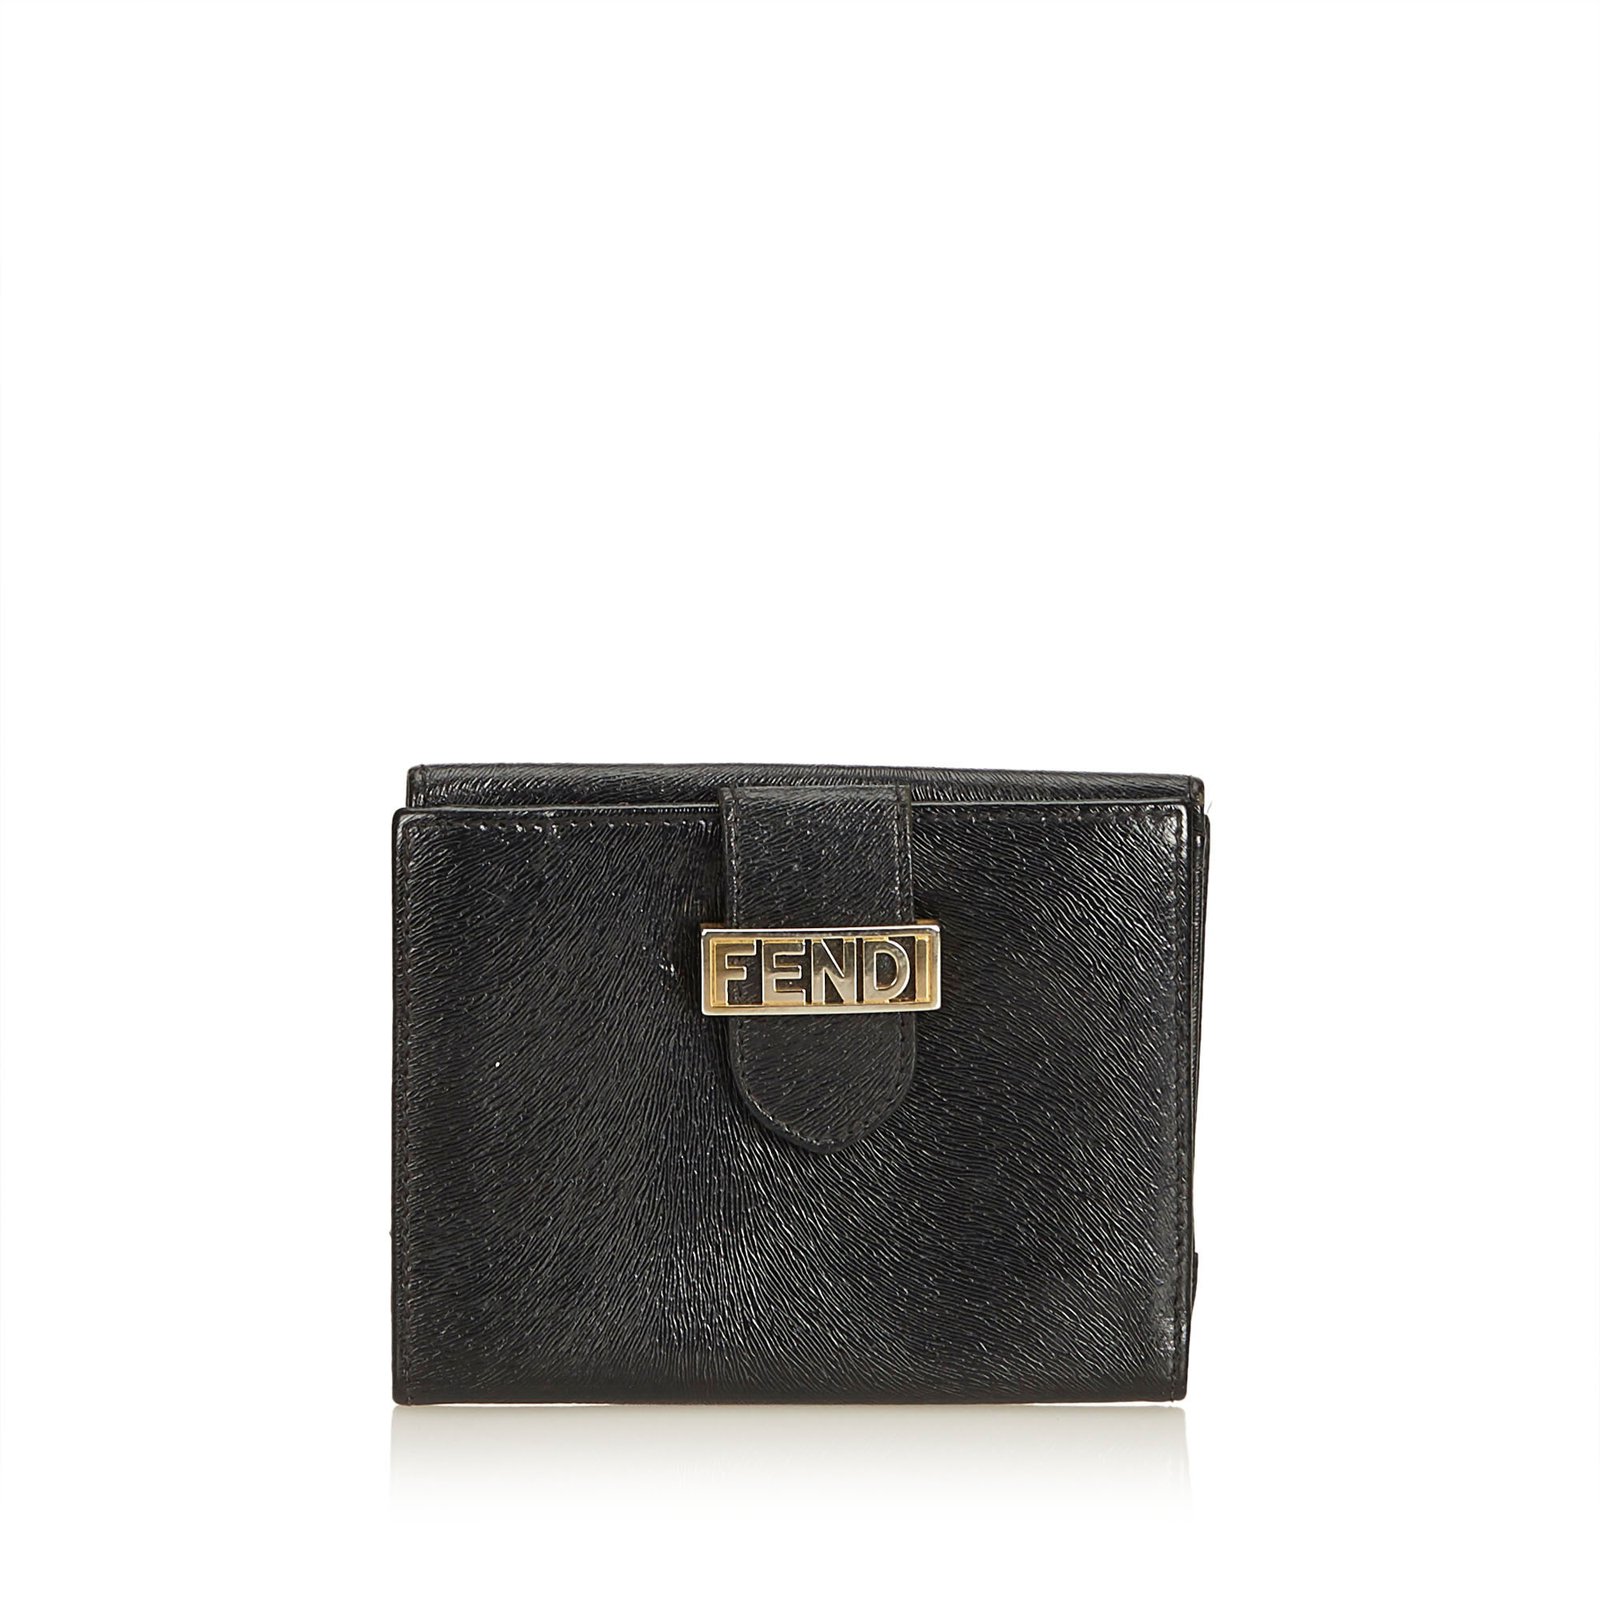 fendi short wallet